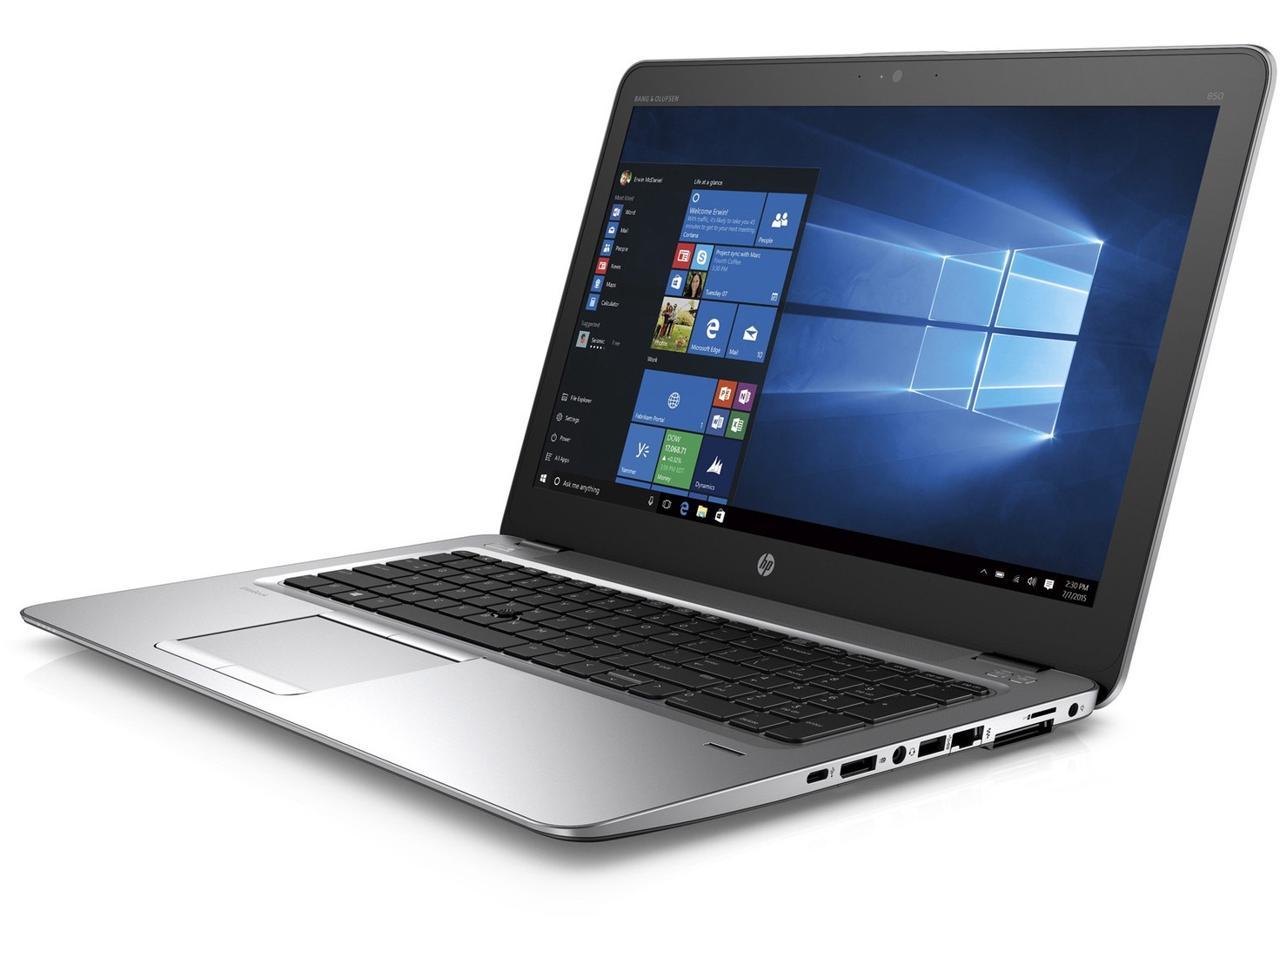 HP EliteBook 850 G3 15.6-in Laptop - Intel Core i5 6300U 6th Gen 2.40 GHz 8GB 256GB SSD Windows 10 Pro 64-Bit - Webcam, Touchscreen